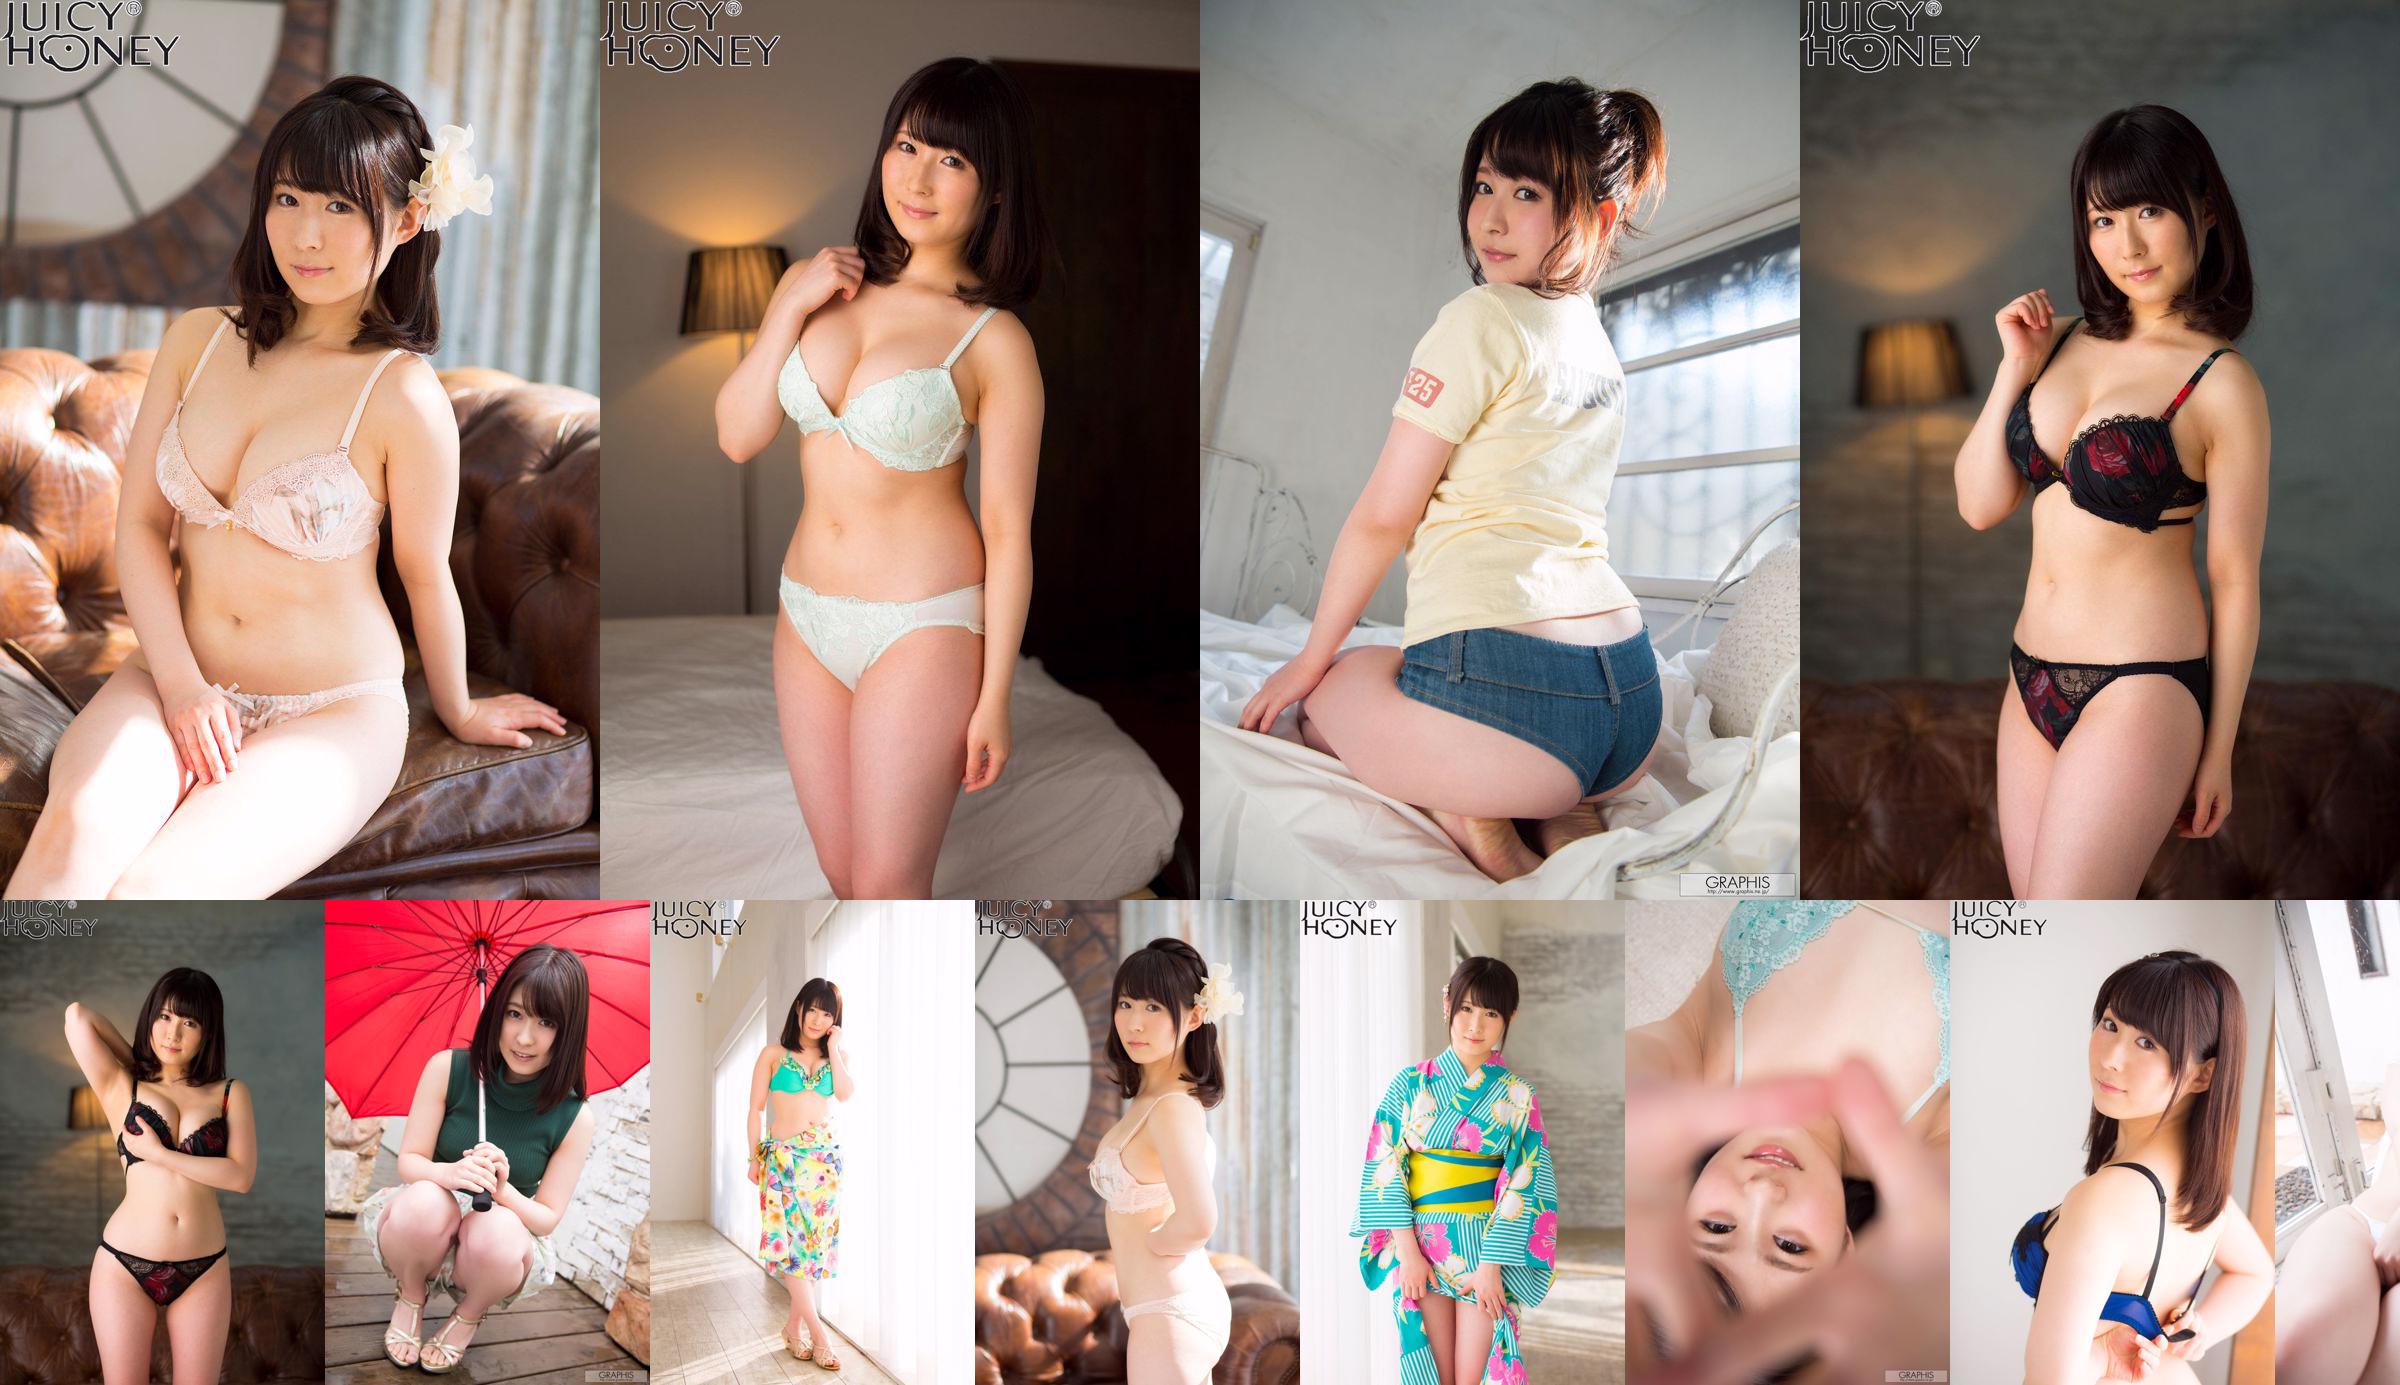 [X-City] Juicy Honey jh216 Asuka り ん Rin Asuka No.c07f0c Trang 3